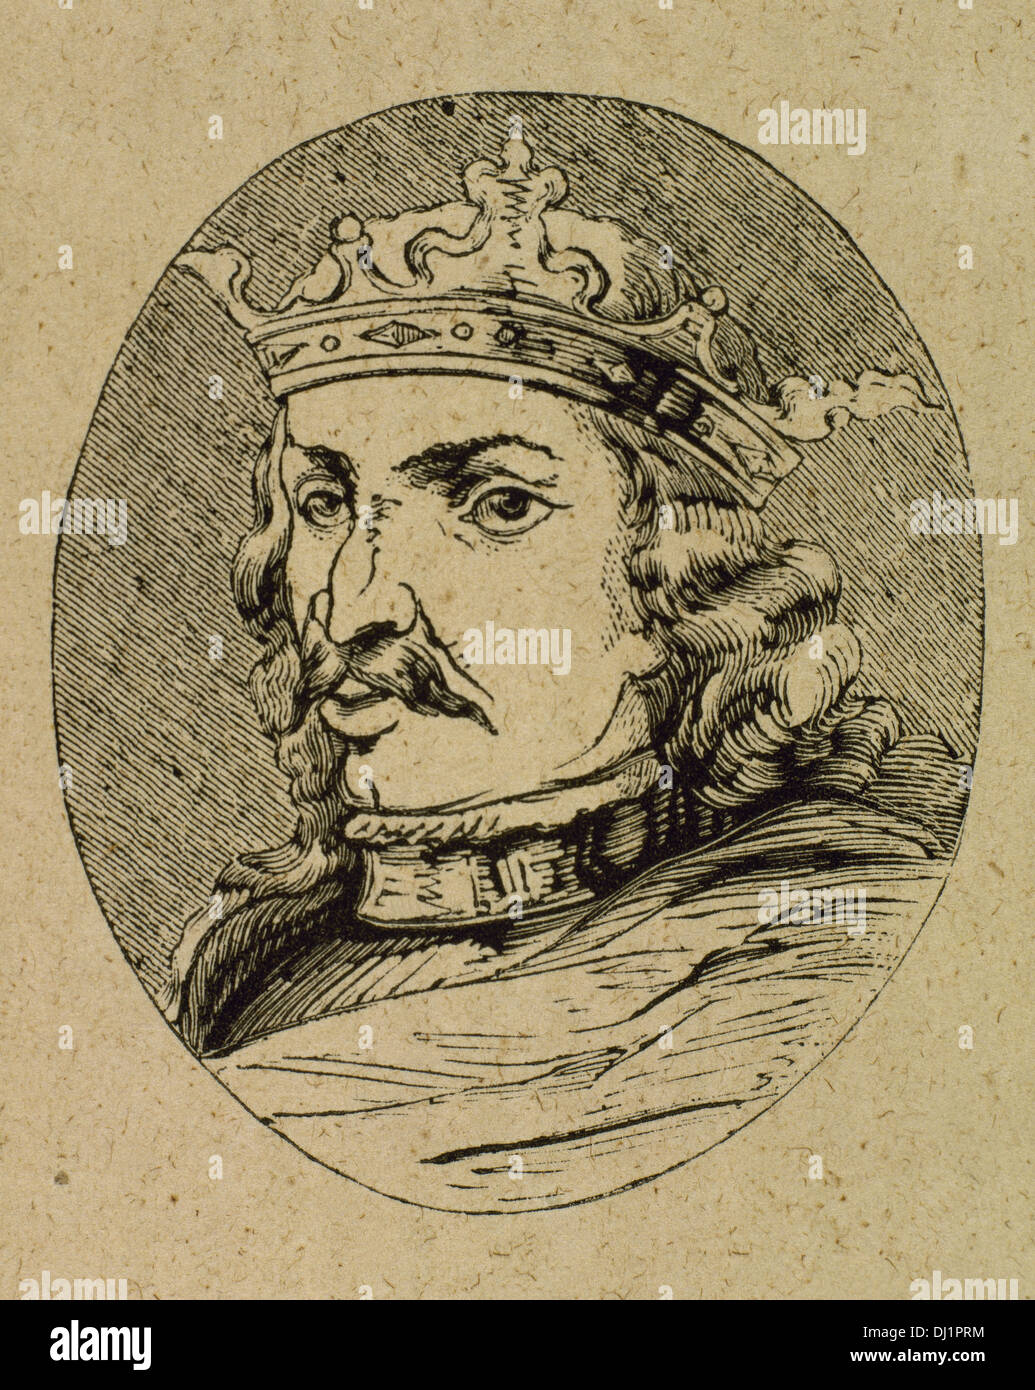 Henry IV de Castille (1425-1474). Roi de la Couronne de Castille. Surnommé l'impuissant. La gravure. Banque D'Images